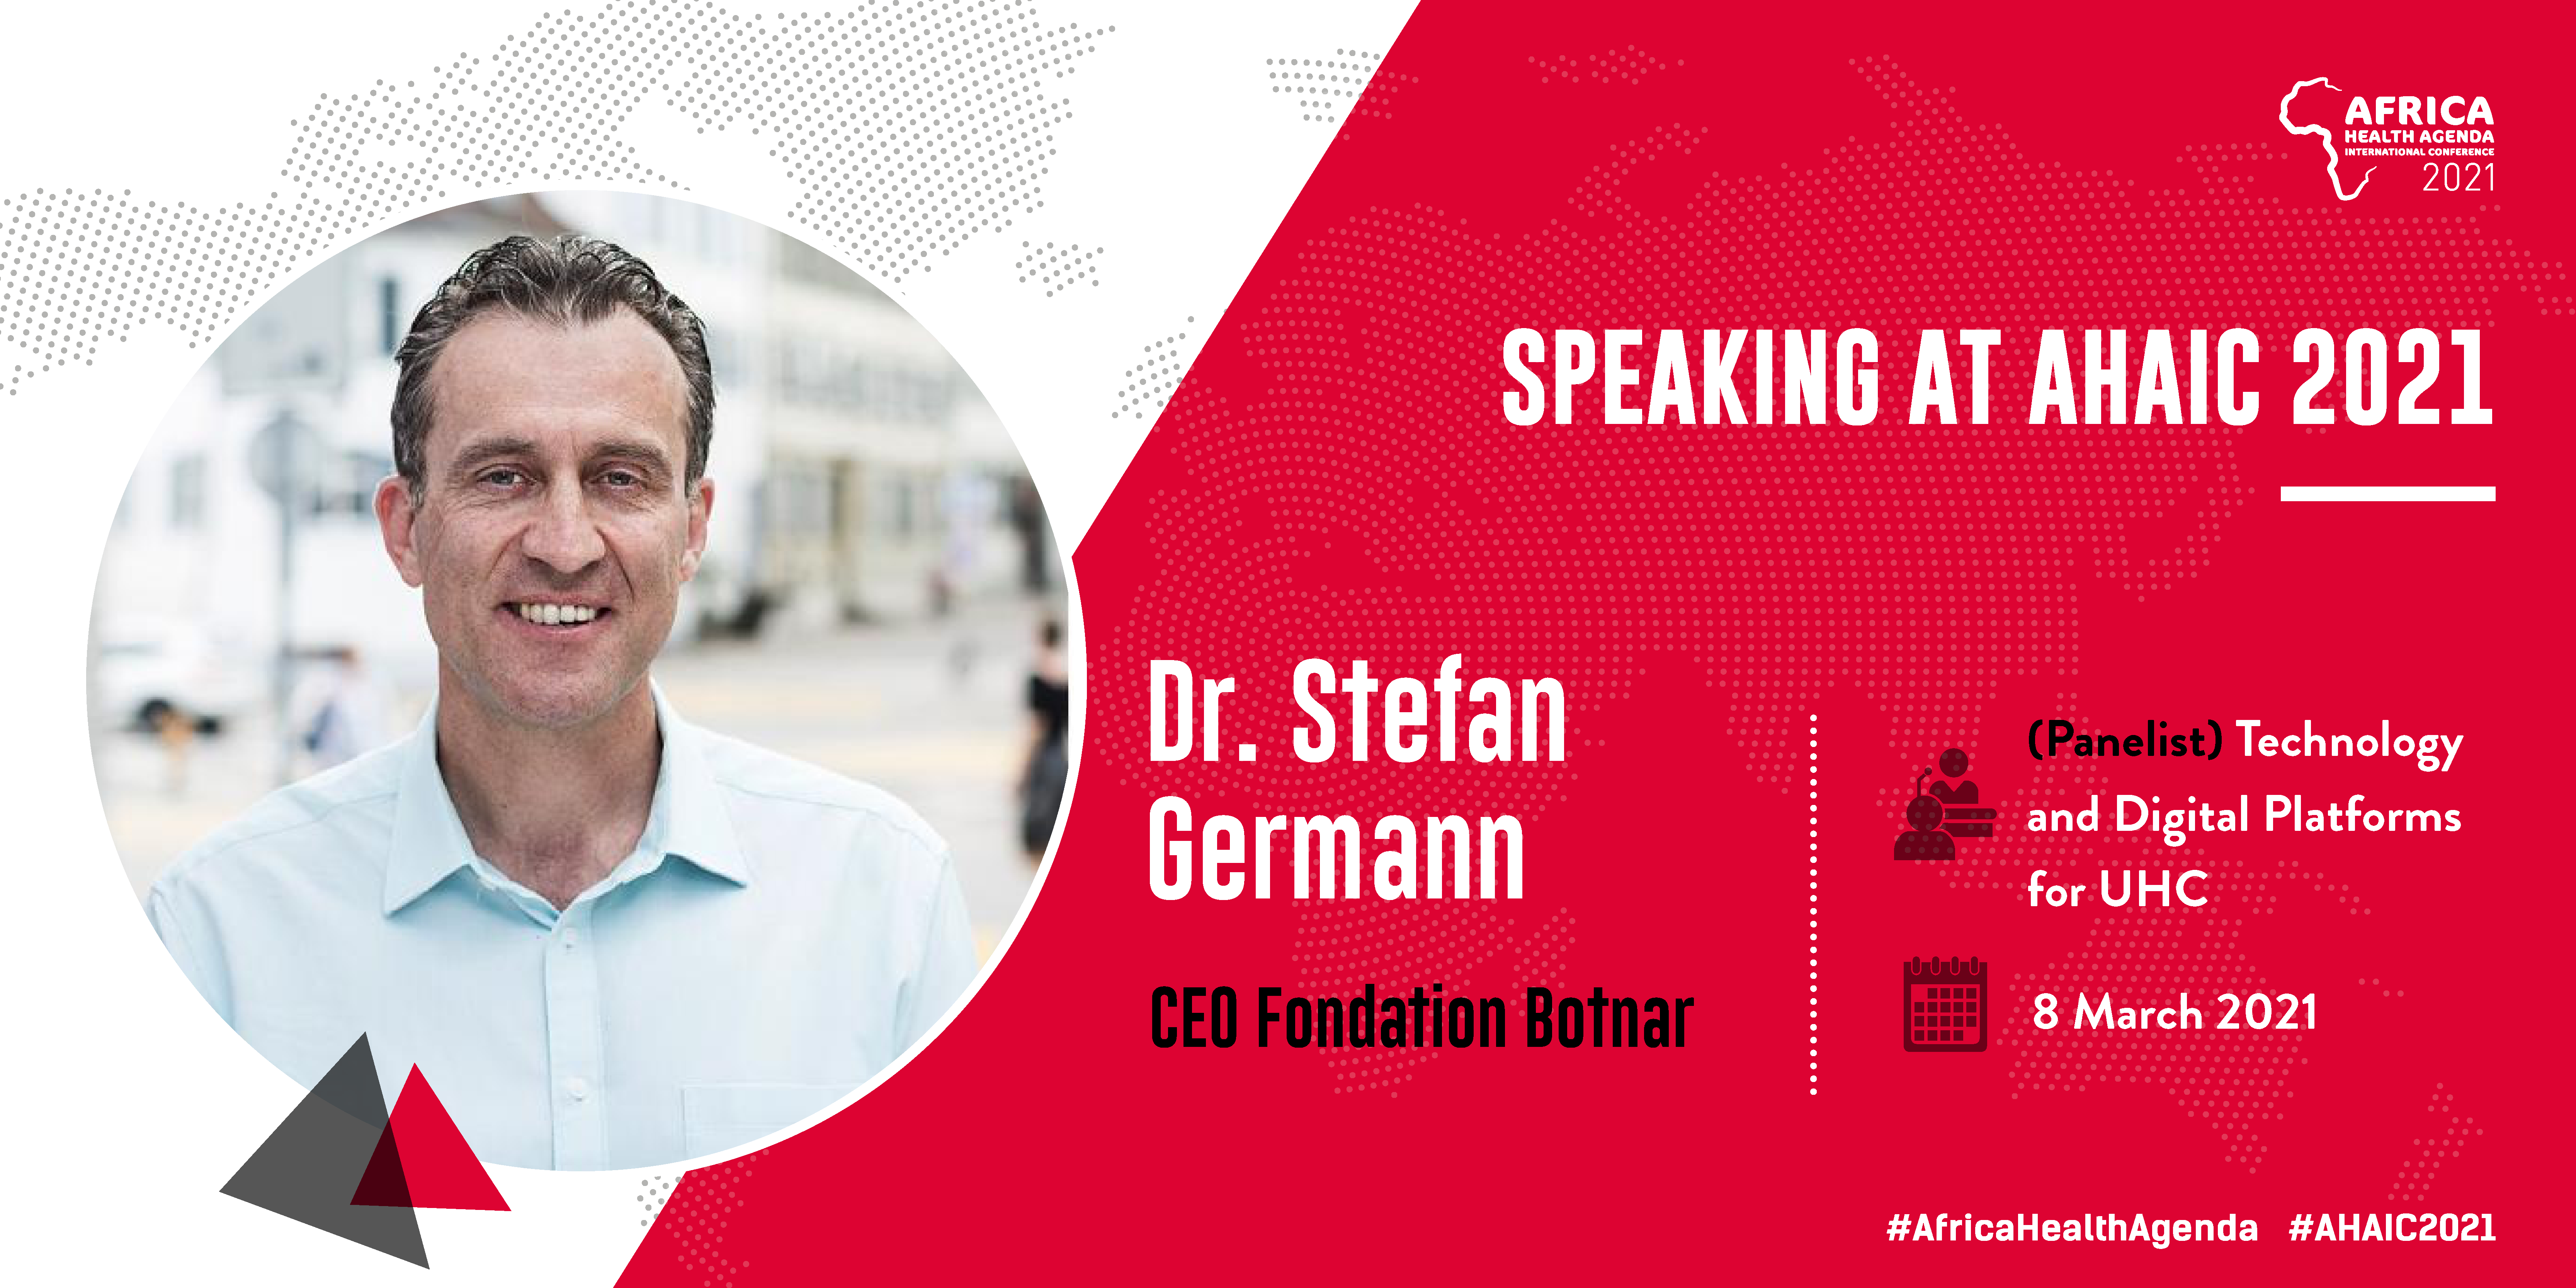 Dr. Stefan Germann, CEO of Fondation Botnar